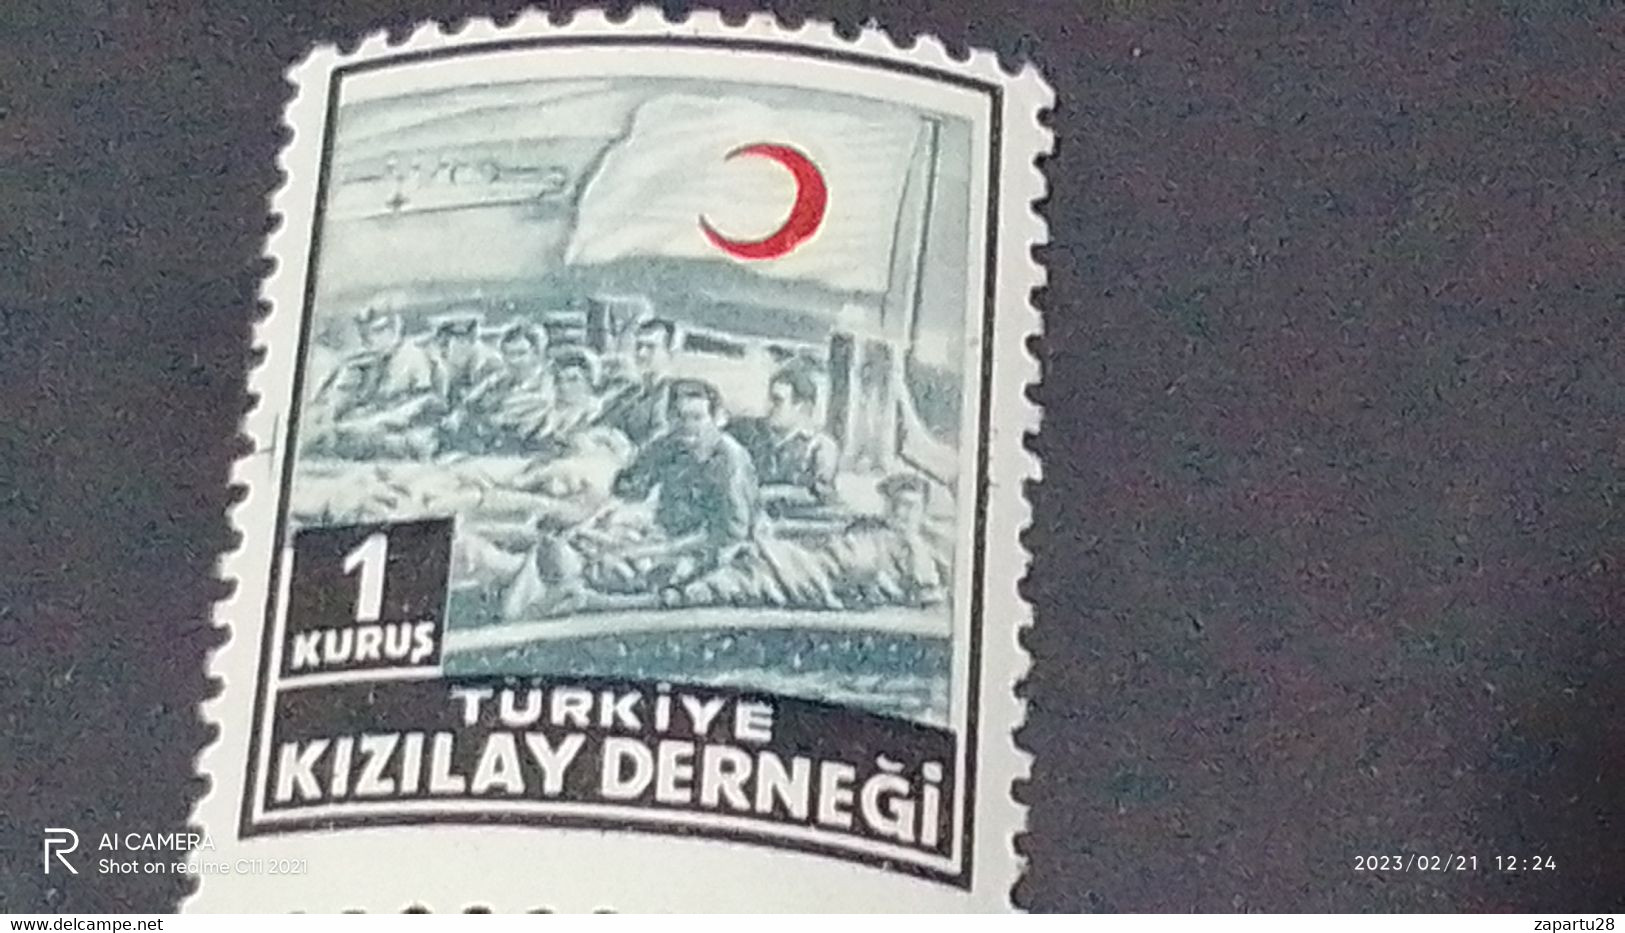 TÜRKEY--YARDIM PULLARI-1950-60  KIZILAY DERNEĞİ  1K  DAMGASIZ - Liefdadigheid Zegels